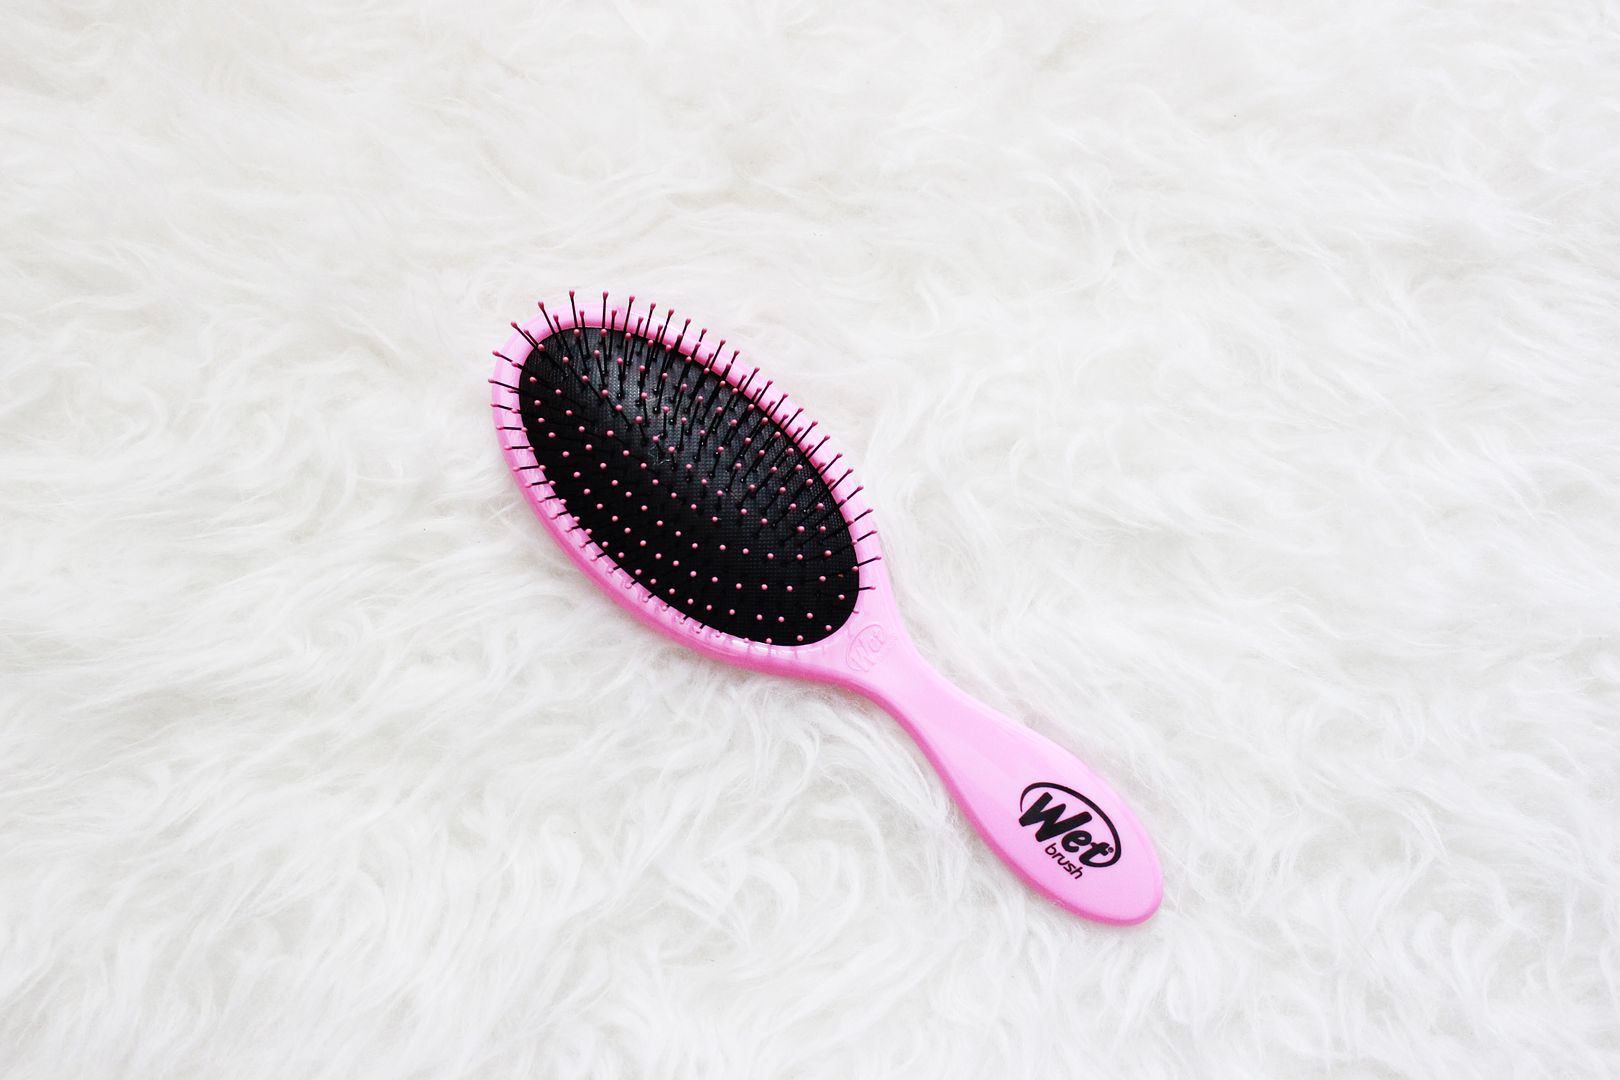 Wet Brush Pro Detangle Hair Brush The Best Detangle Hair Brush Ever